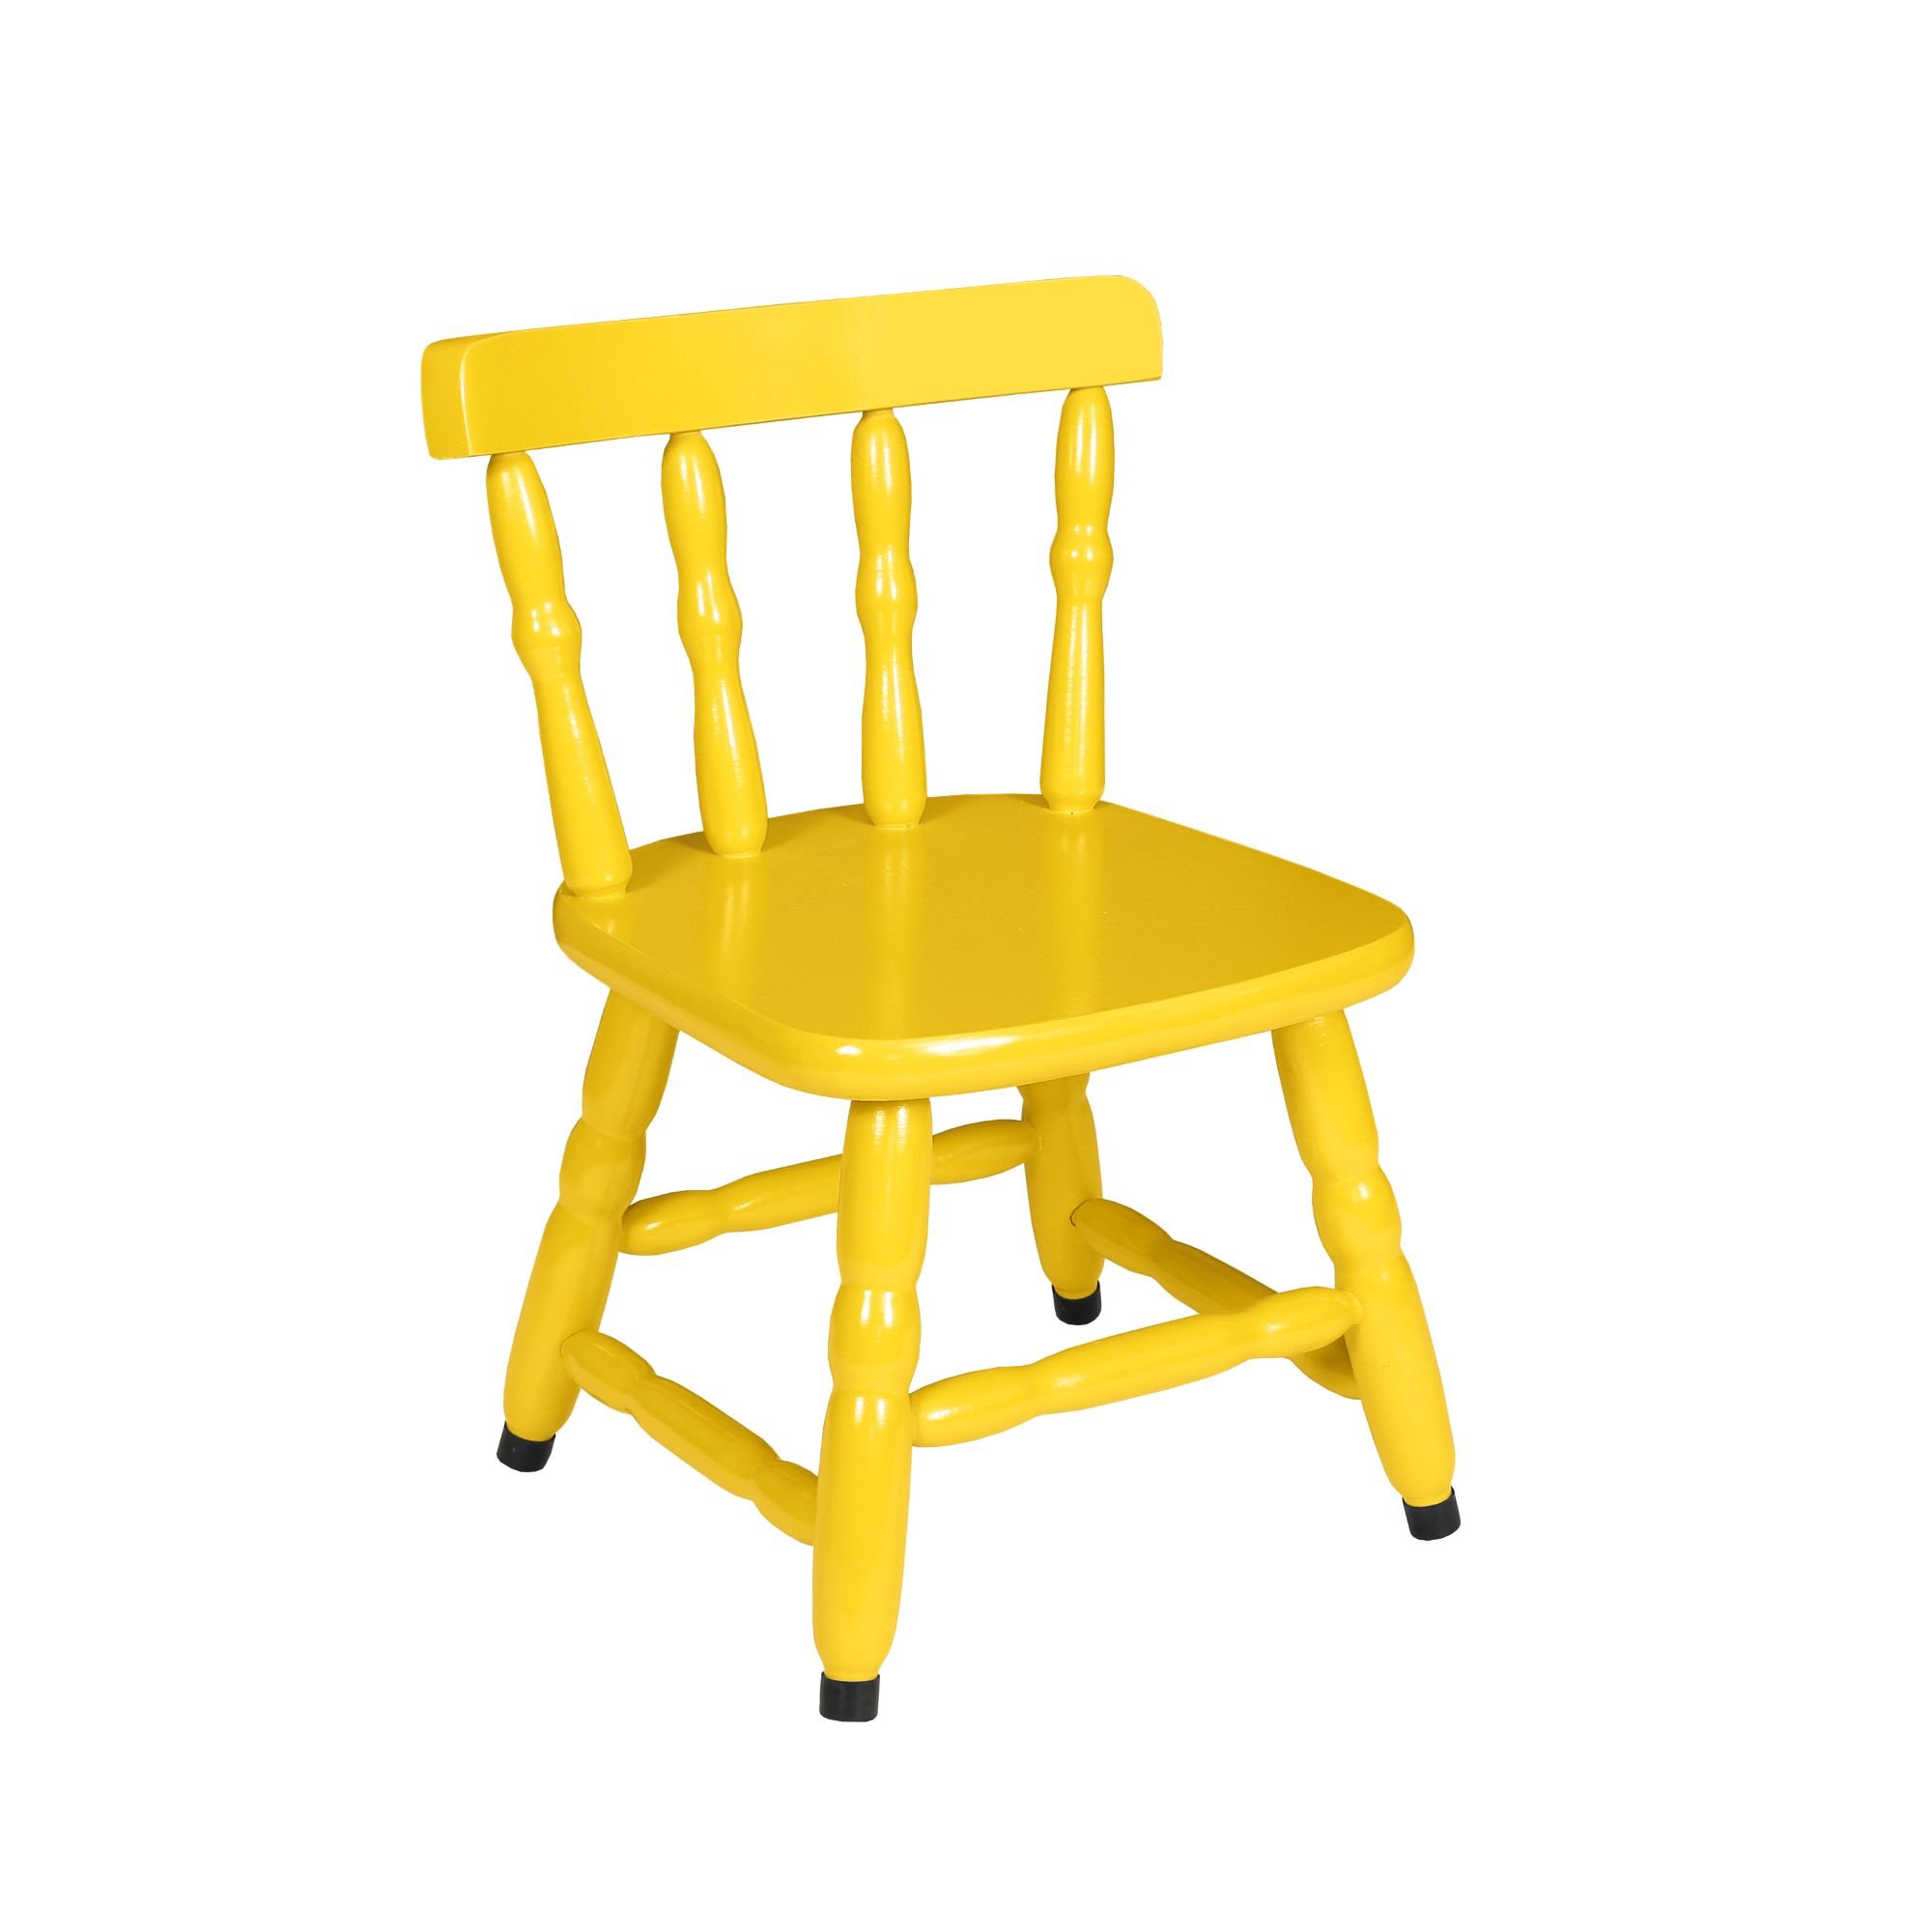 1 Cadeira Infantil Scholl Coloridas - Amarelo - 1